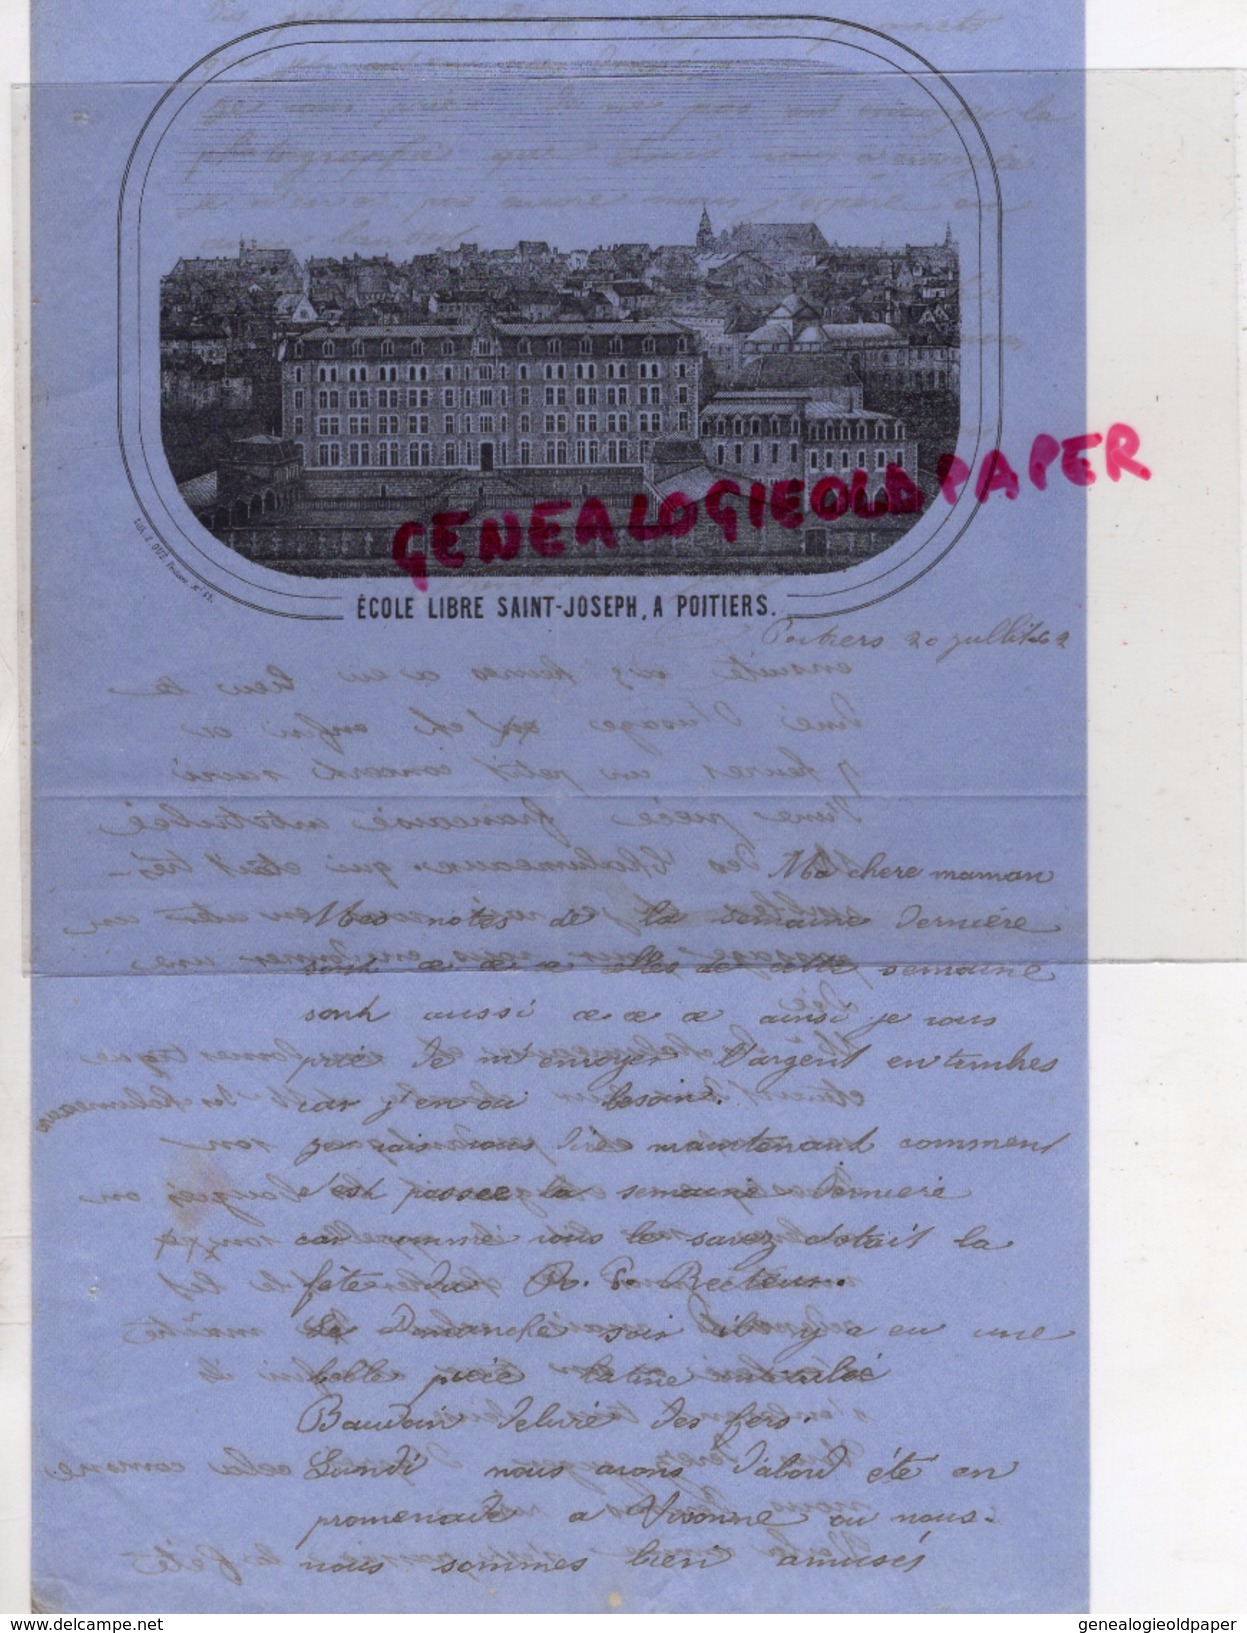 86- POITIERS-LETTRE MANUSCRITE  DE RENE ARGENCE A SA MAMAN ECOLE LIBRE SAINT JOSEPH 1862 - Historical Documents